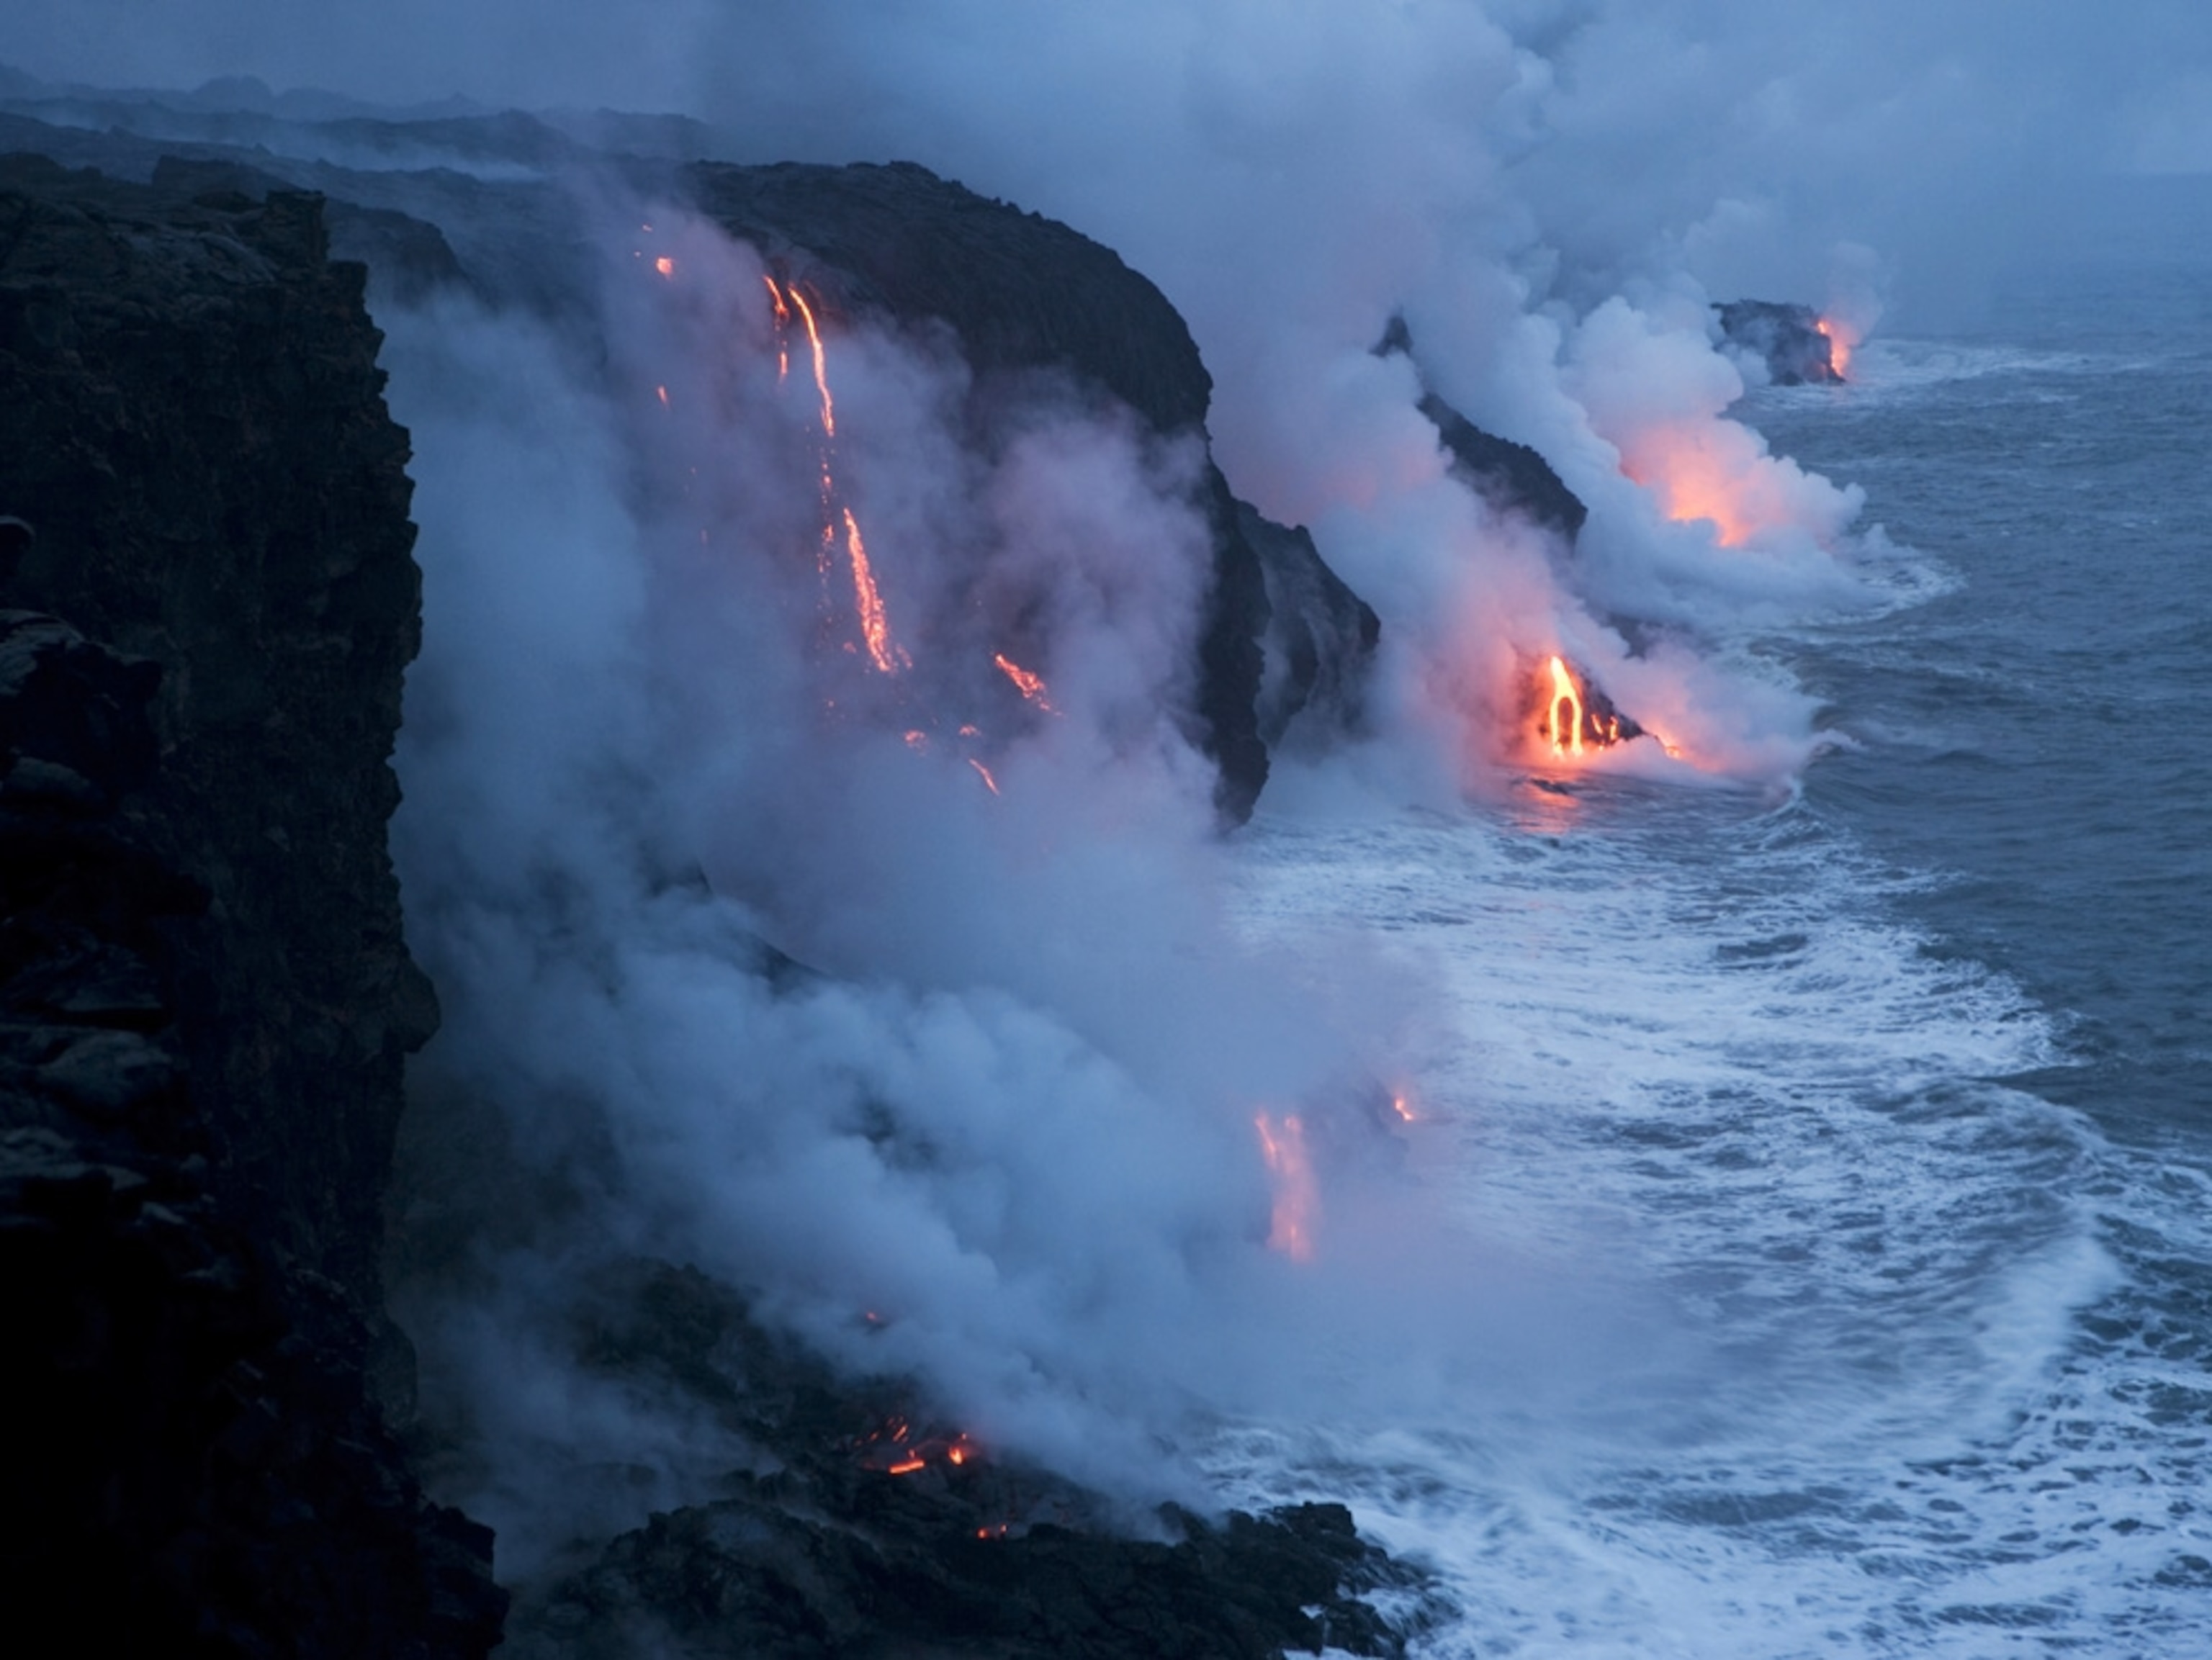 عکس جالب ورود دود و آتش آتشفشانی به آب دریا با وضوح HD